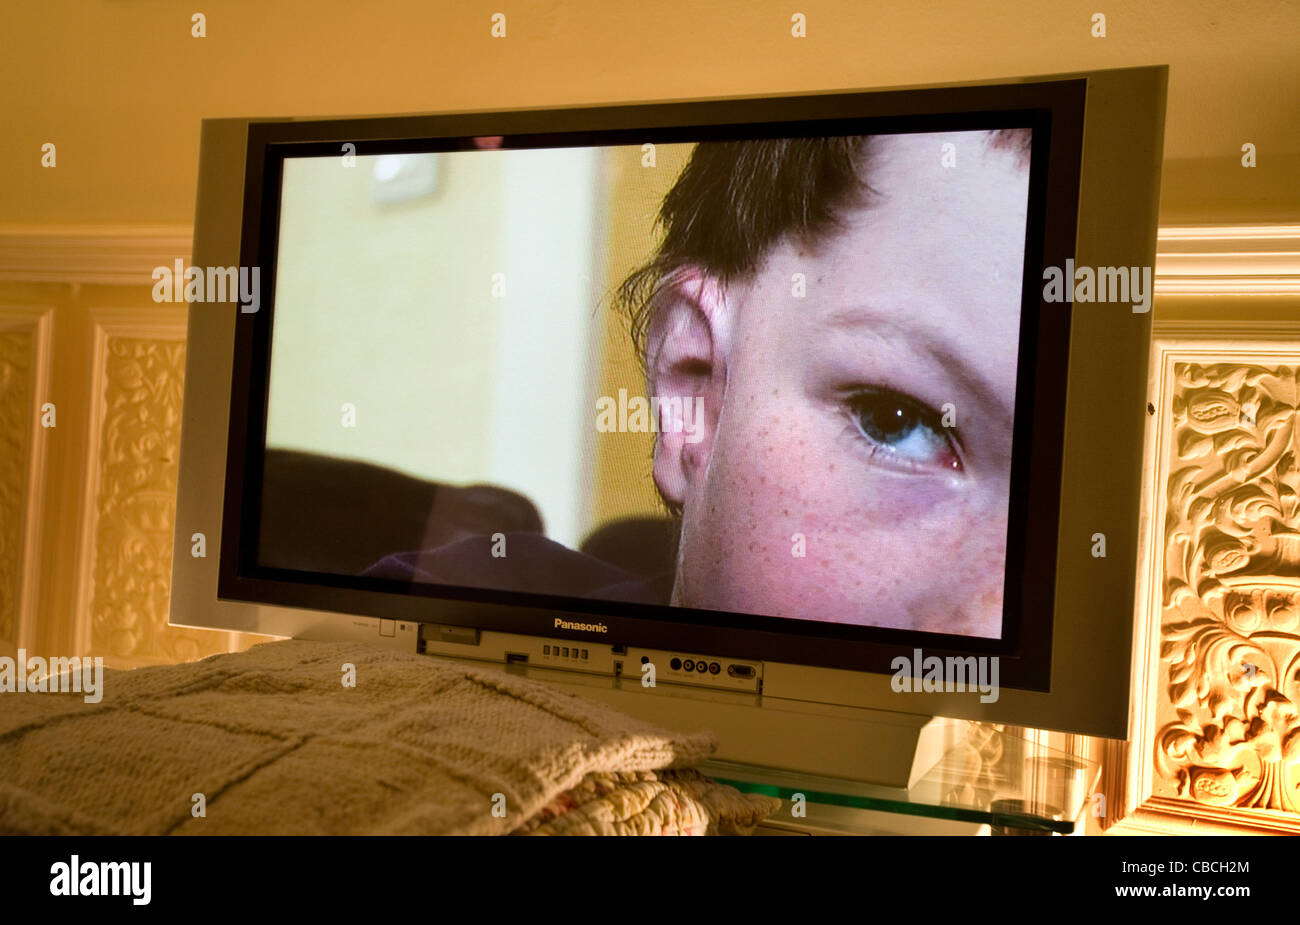 Das rechte Auge eines jungen Mannes späht heraus aus einem Flachbildschirm-Fernseher in einer inländischen Lounge. Stockfoto